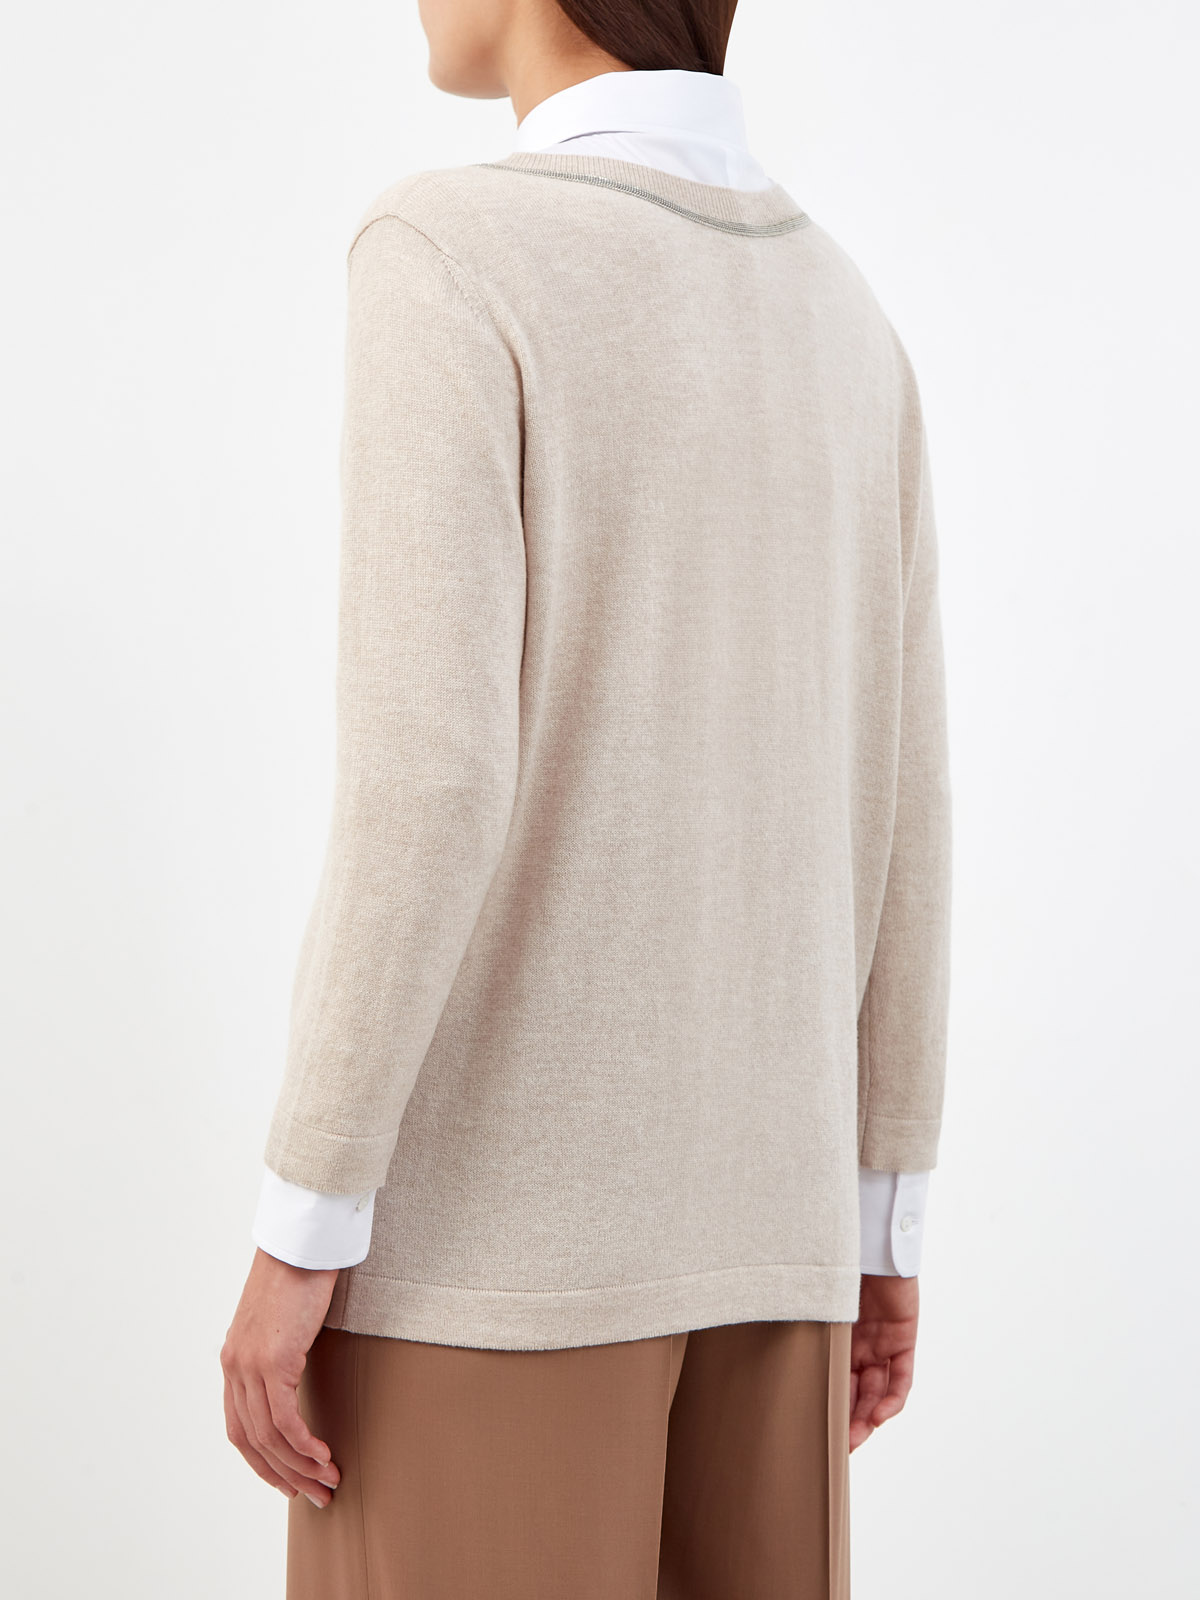 Пуловер из пряжи Platinum с окантовкой рядами цепочек FABIANA FILIPPI, цвет бежевый, размер 40;42;44;46;48 - фото 4